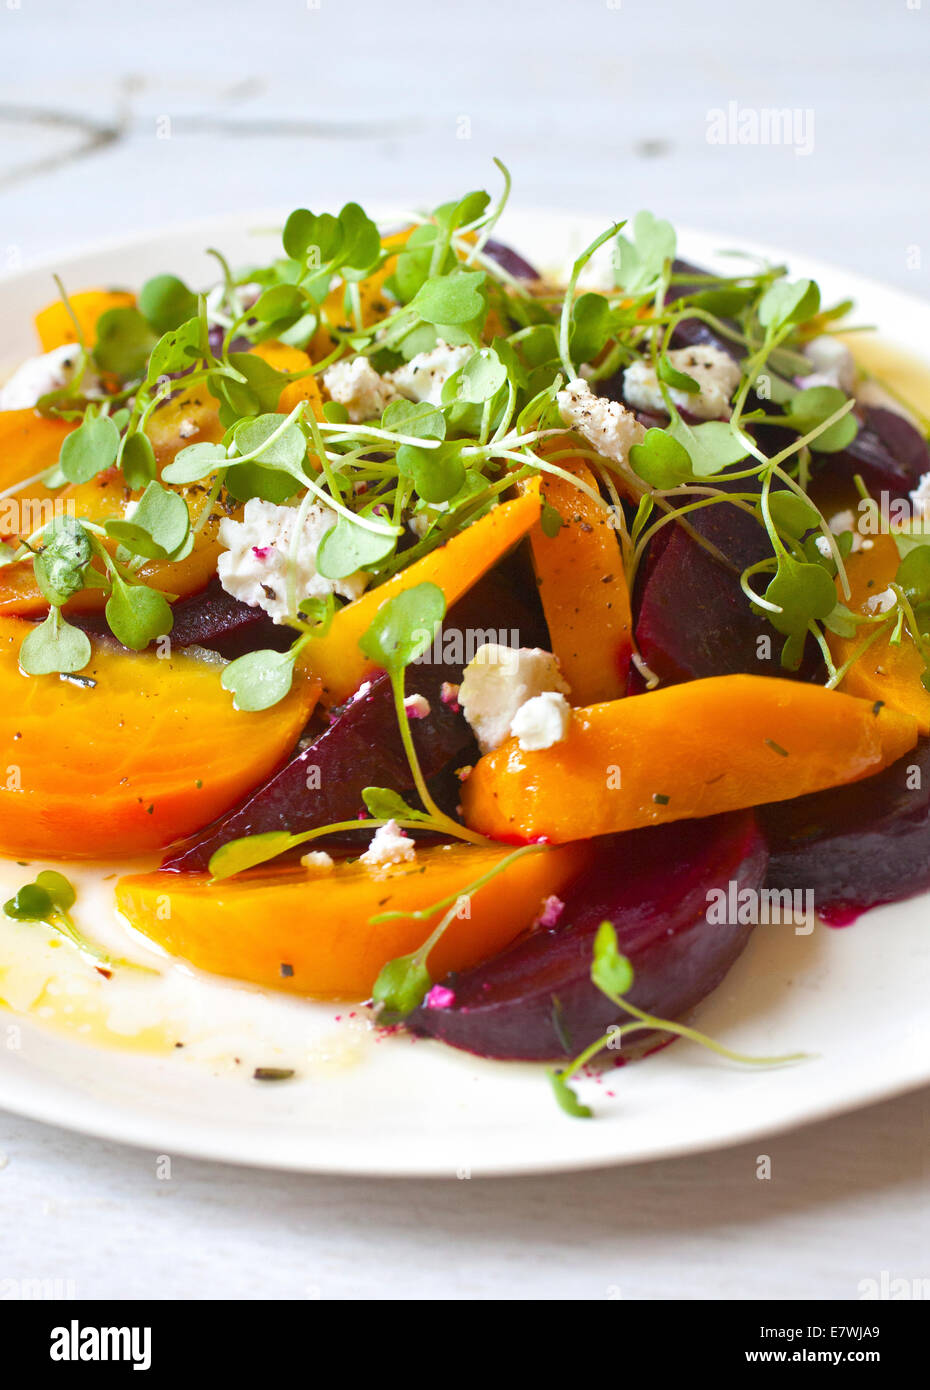 Farbenfroher Rüben-Salat auf weißem Teller und Hintergrund. Gelbe Rüben, orange Rüben, rote Rüben. Stockfoto